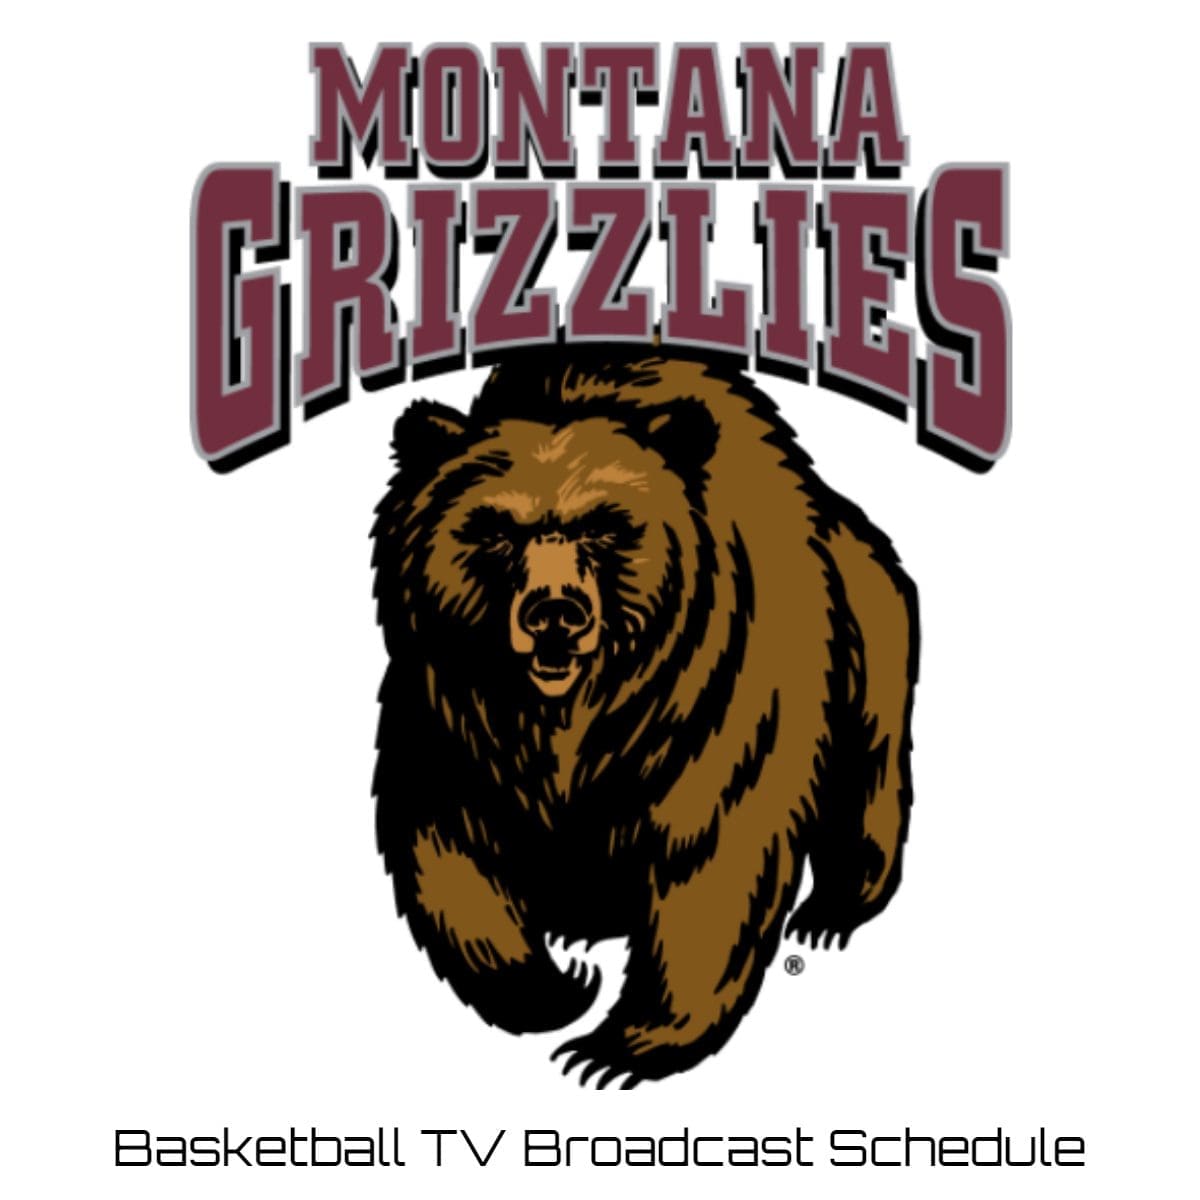 Montana Grizzlies Basketball TV Broadcast Schedule